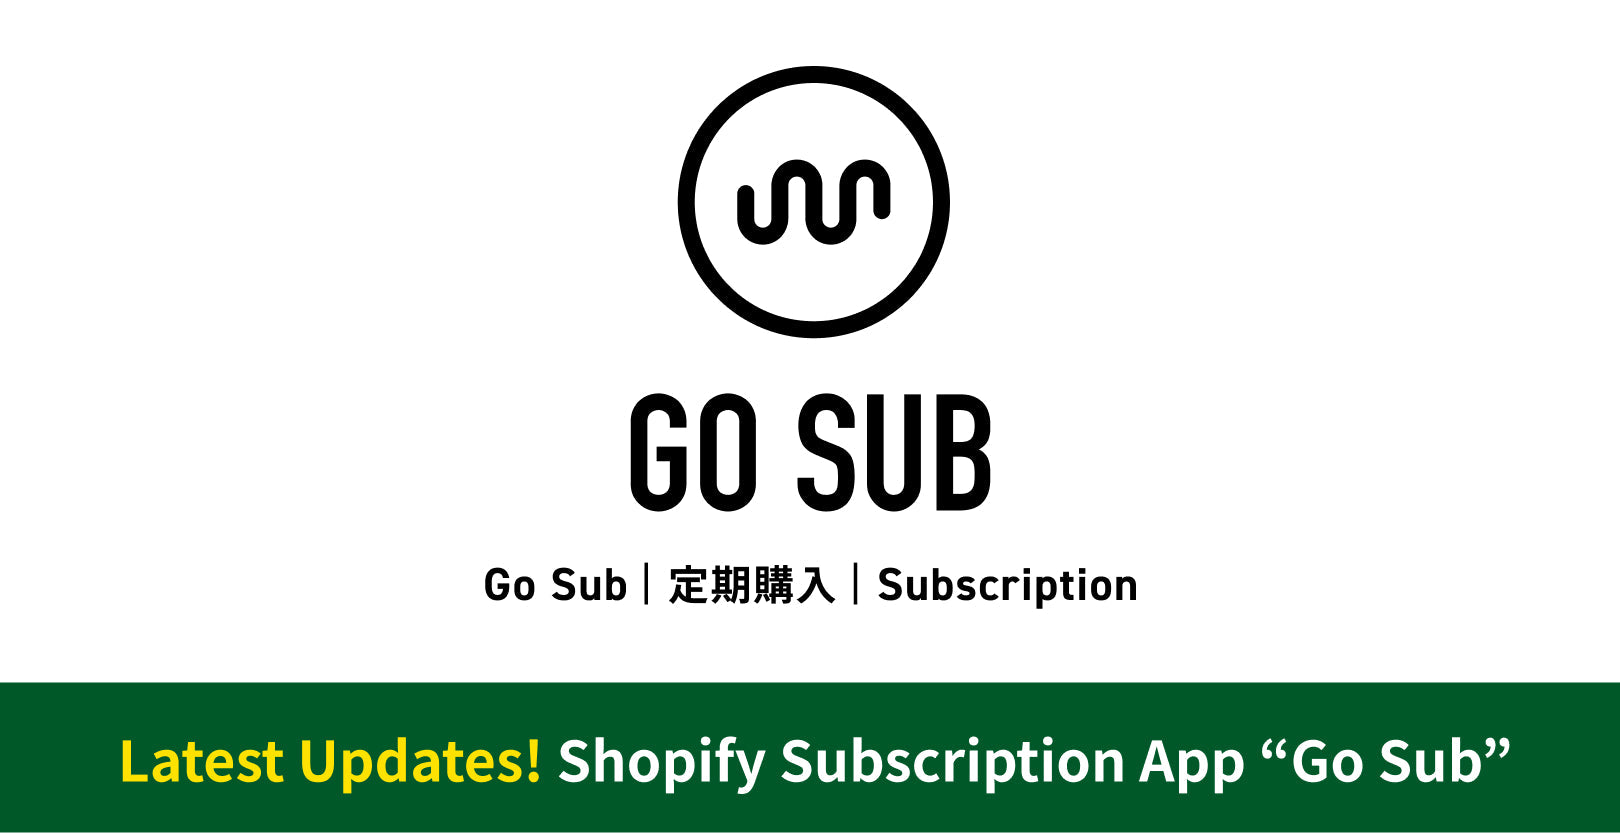 Go Sub | 定期購入 | Subscription アップデート情報